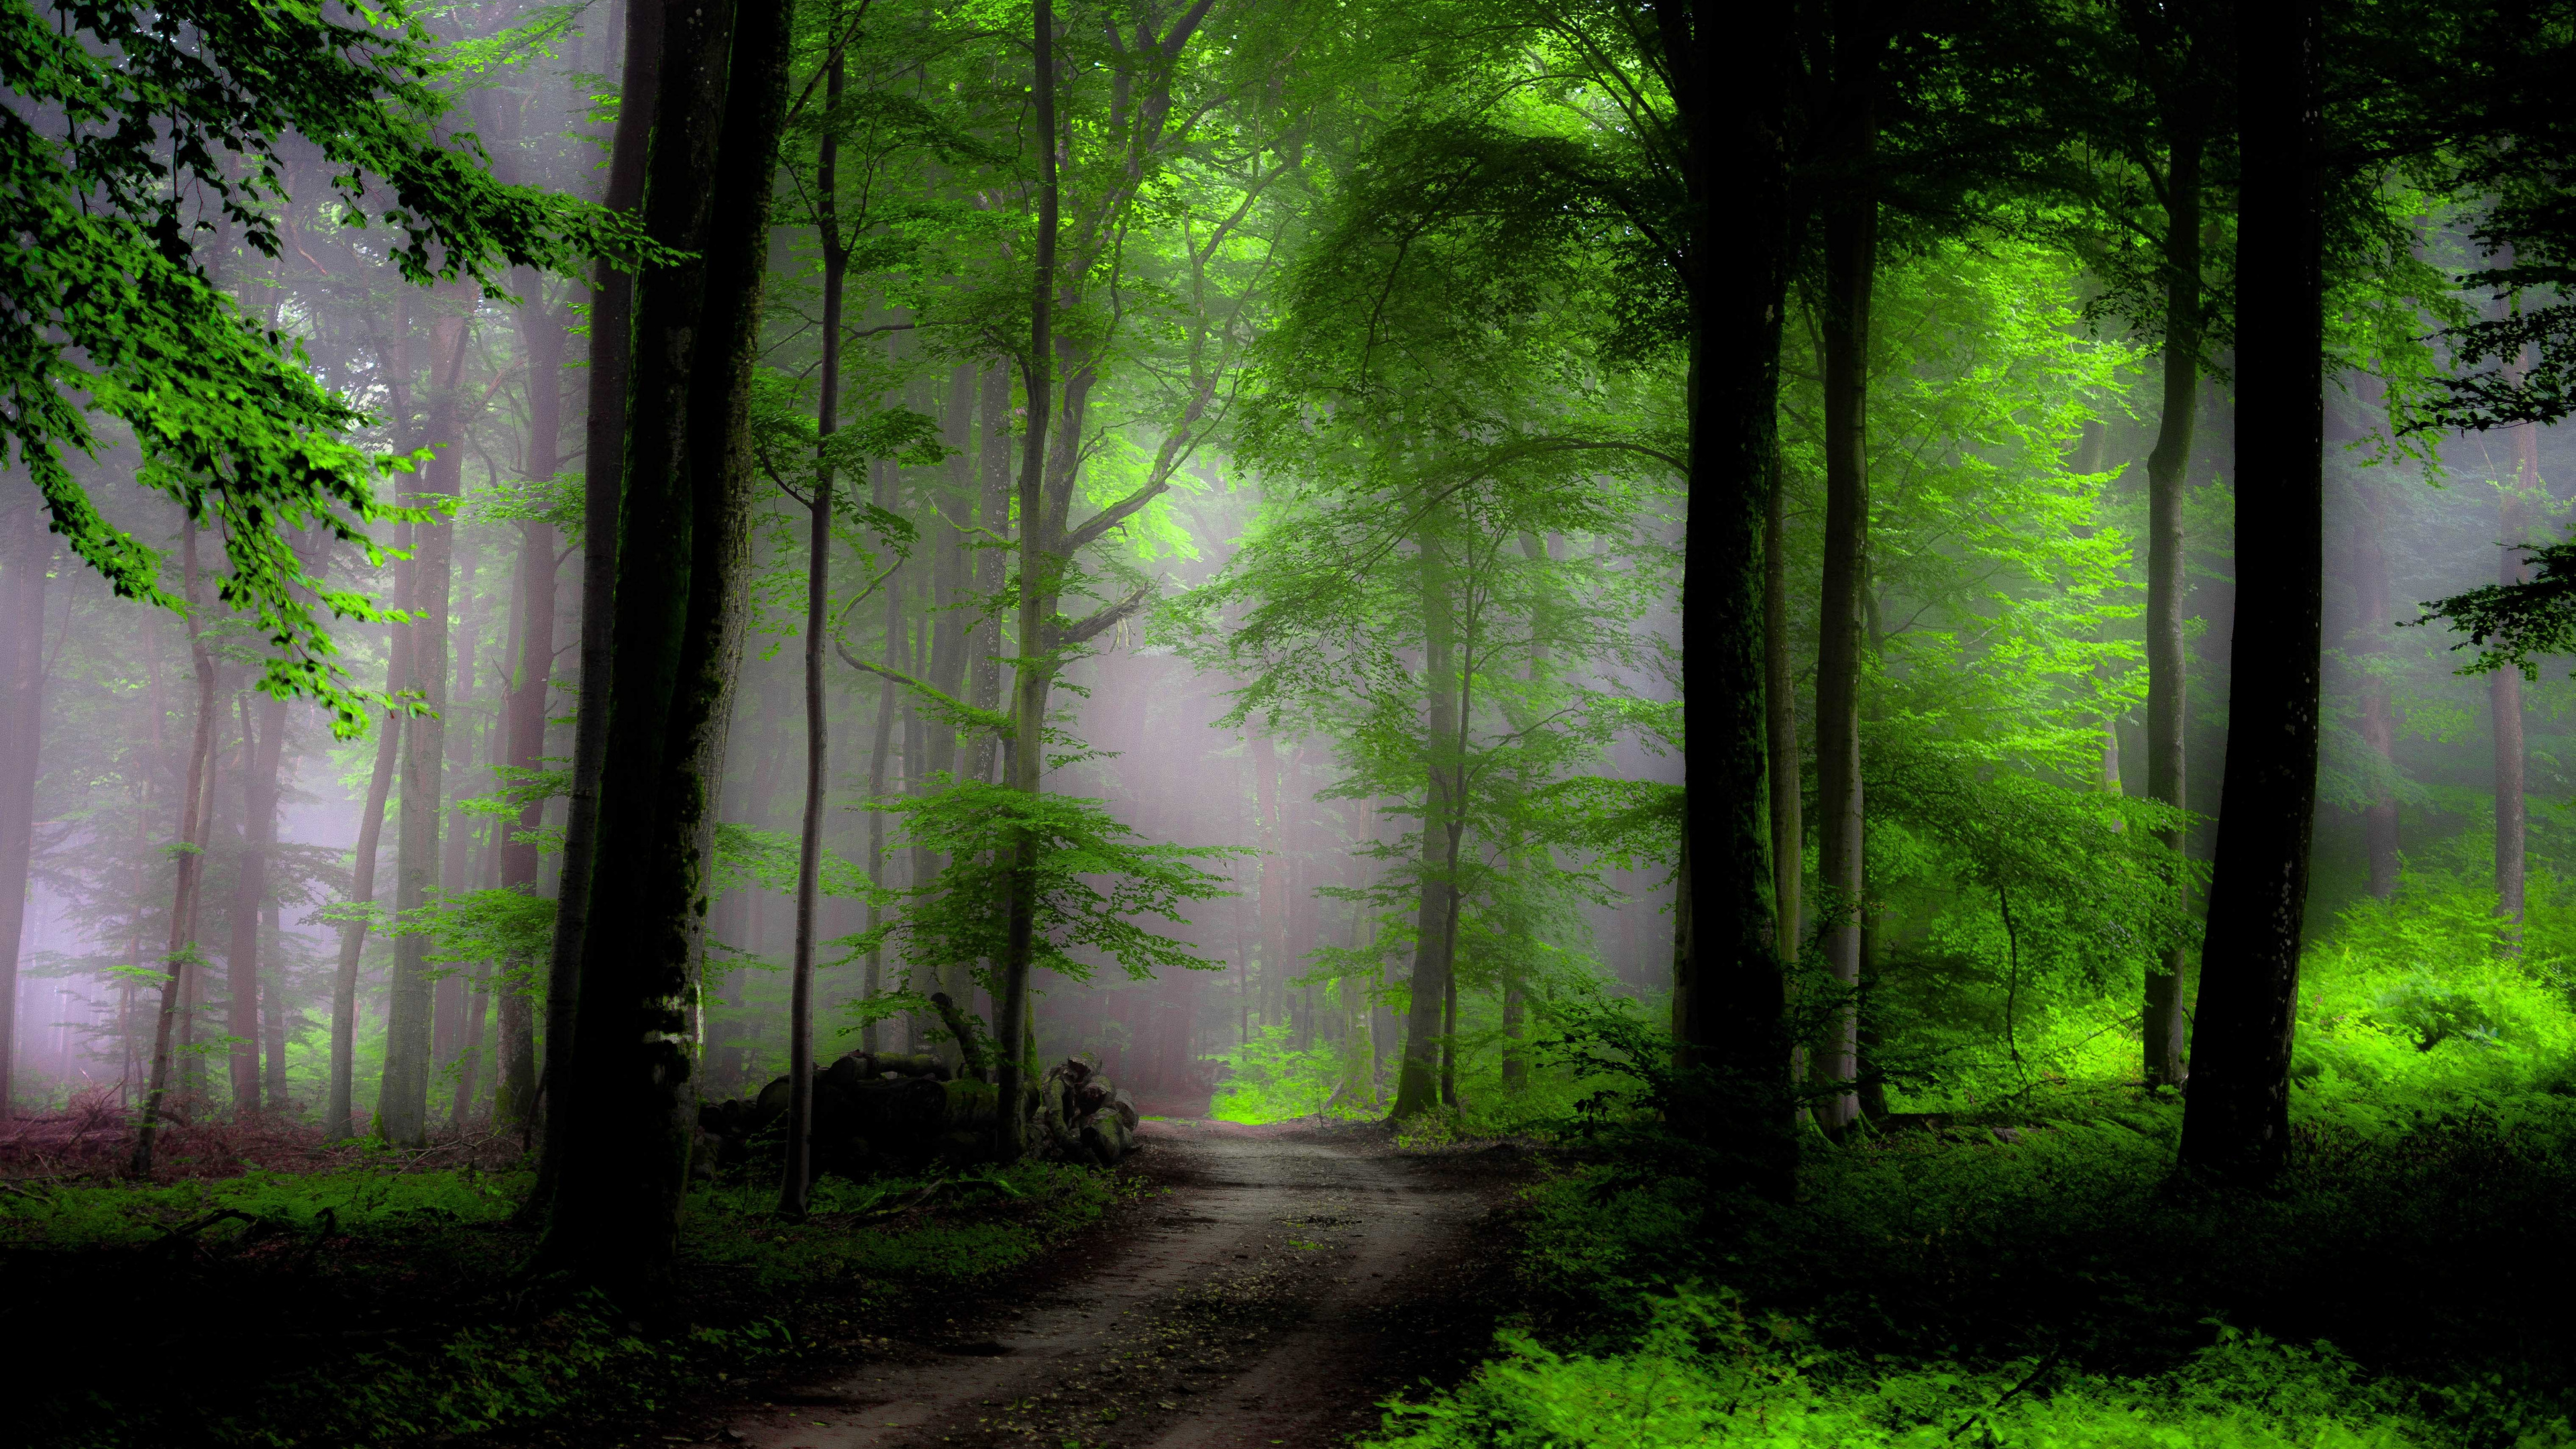 壁画, 森林, 性质, 绿色的, 林地 壁纸 3840x2160 允许